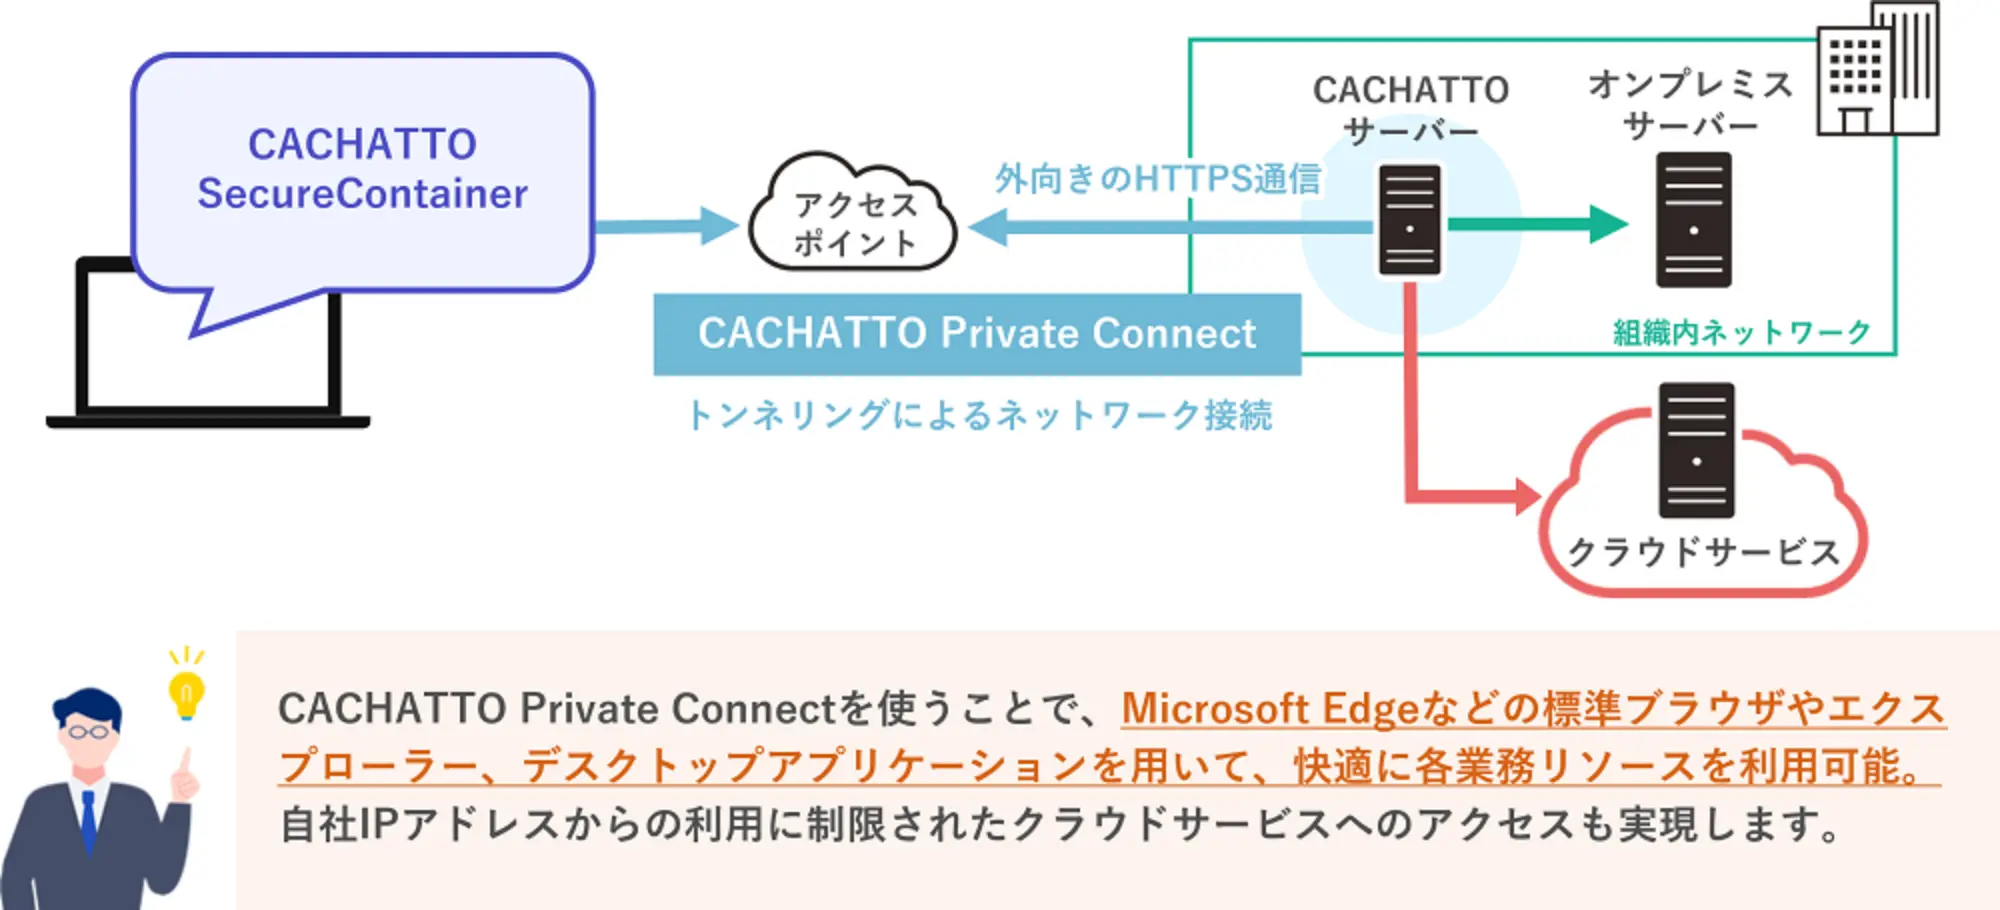 CACHATTO Private Connectとは